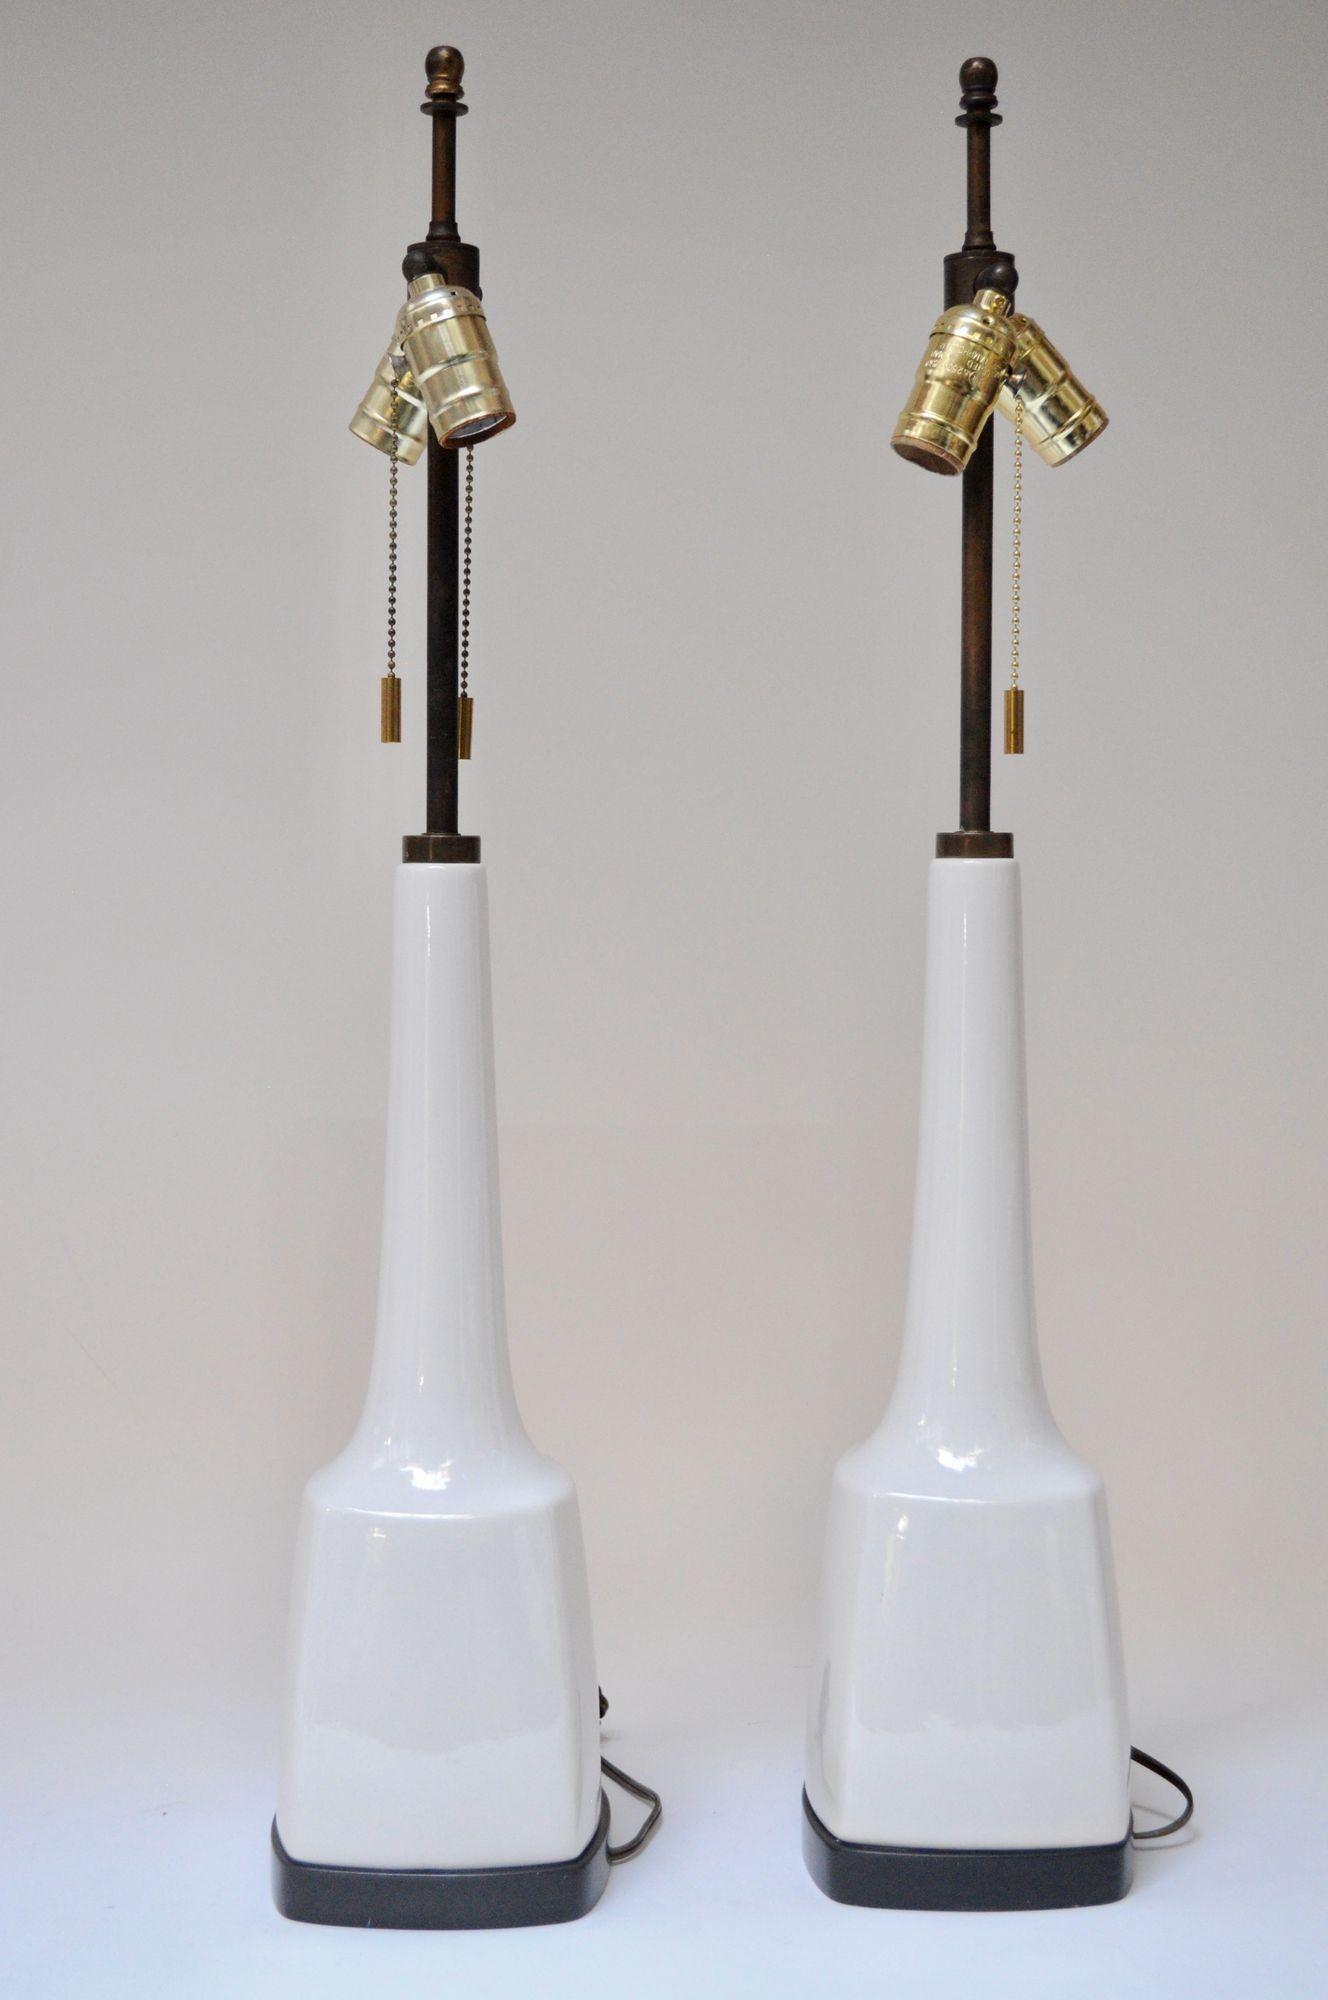 Paar amerikanische Tischlampen der Jahrhundertmitte (ca. 1950er Jahre, USA). Die Stiele aus patiniertem Messing und die Formen aus weißem Porzellan werden von quadratischen Sockeln aus ebonisiertem Holz getragen. Neben der Verkabelung sind auch die